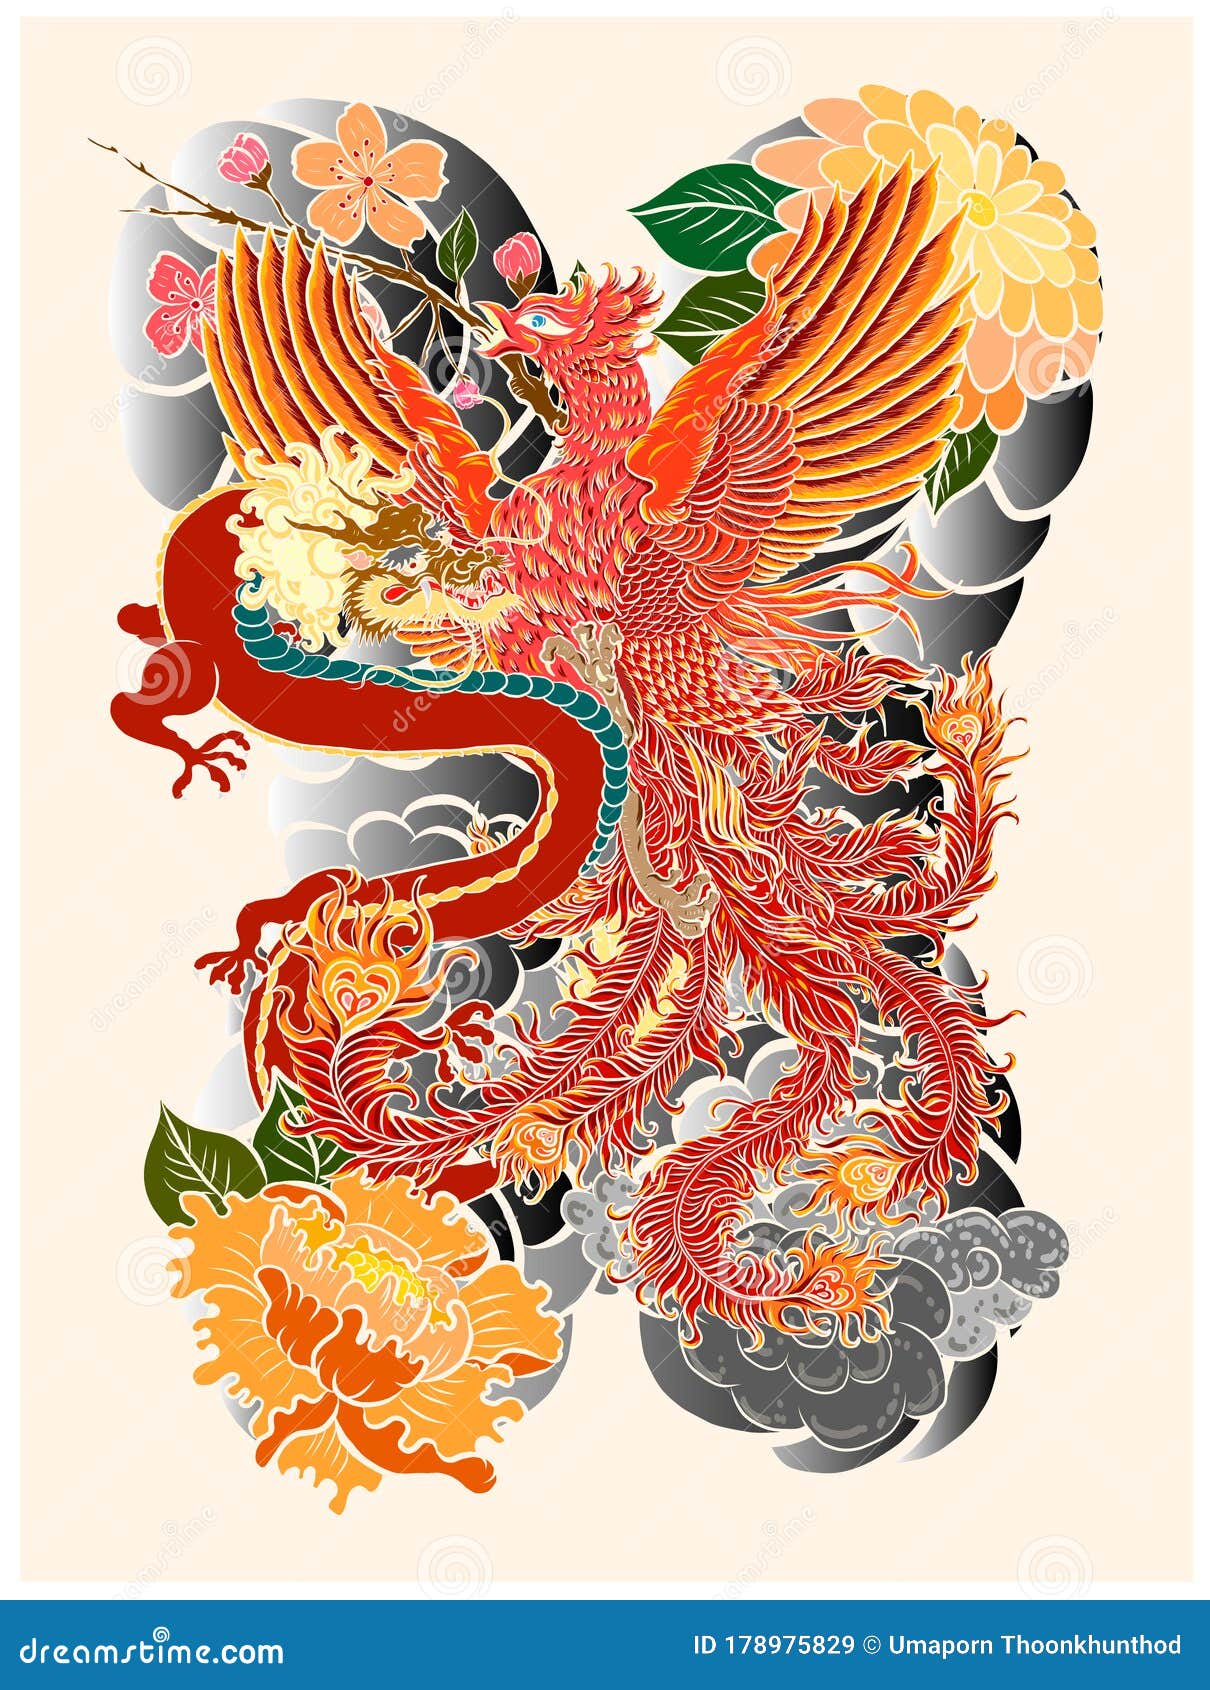 Japanese Peacock TattooAsian Phoenix Fire Bird Tattoo DesignColorful  Phoenix Fire Bird Colouring Book Illustration Stock Vector  Illustration  of japanese fuji 161730874